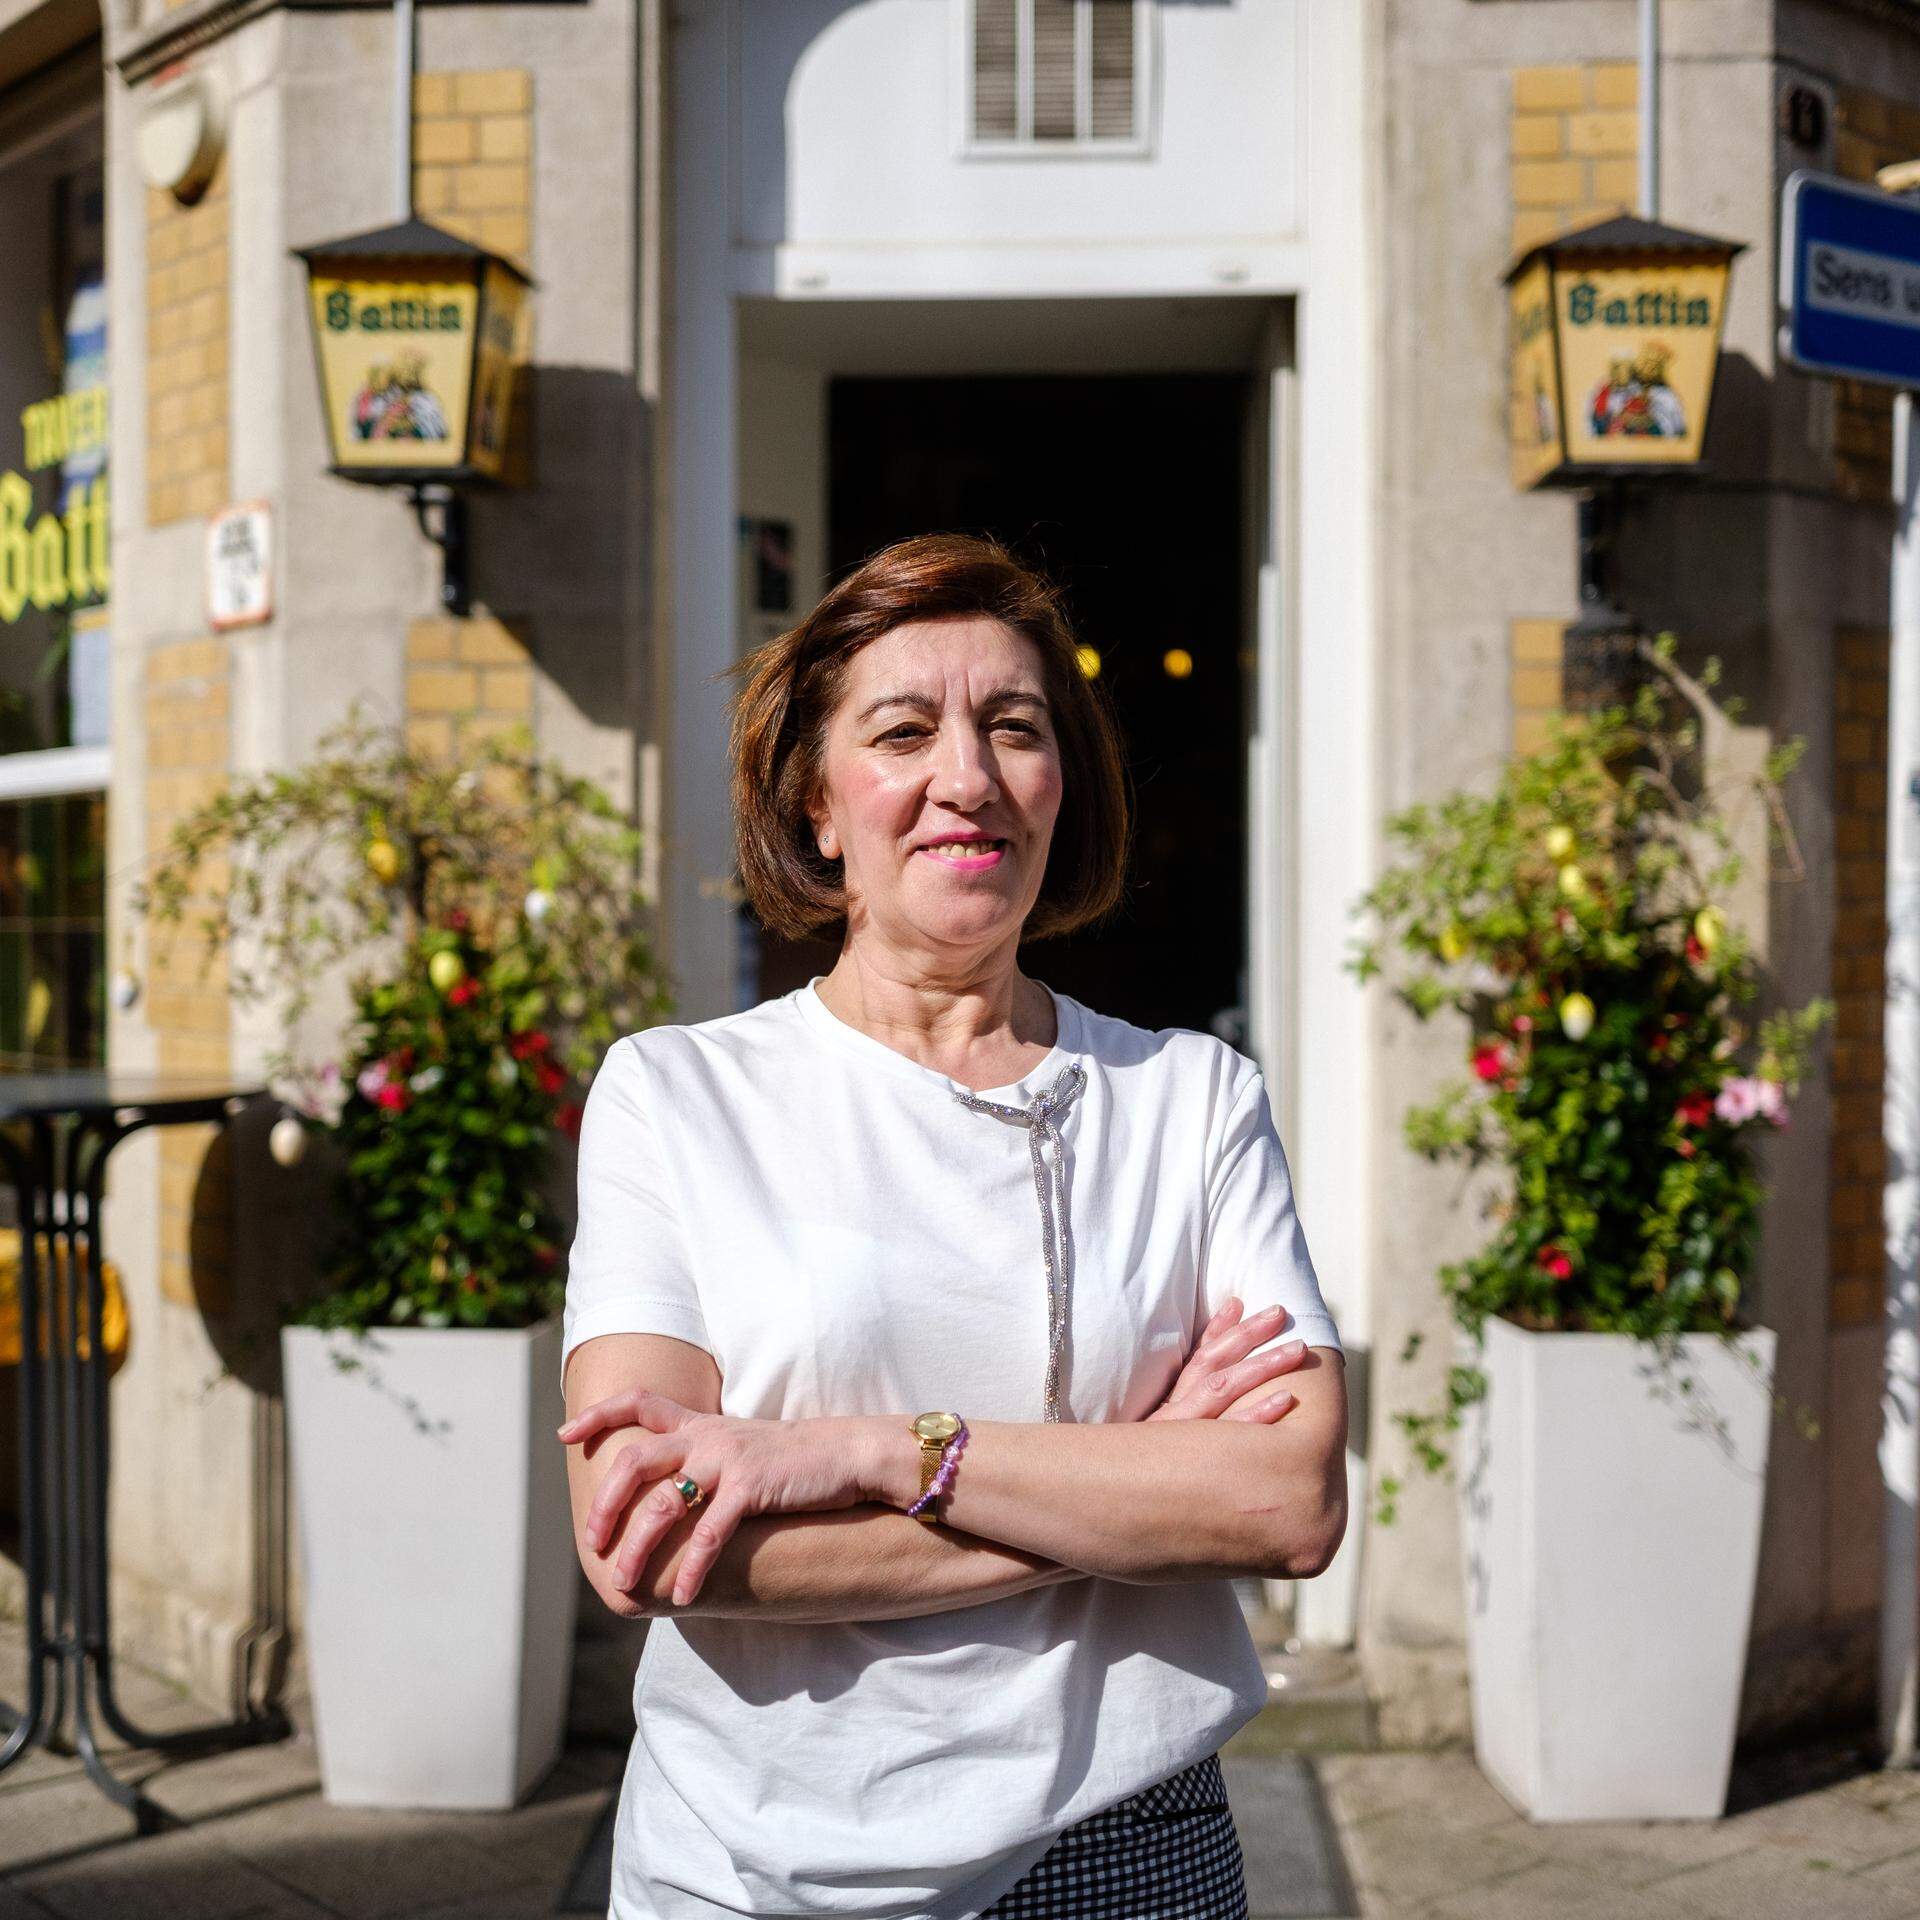 Die 60-jährige Anita Dias leitete die Taverne Battin seit 1989.